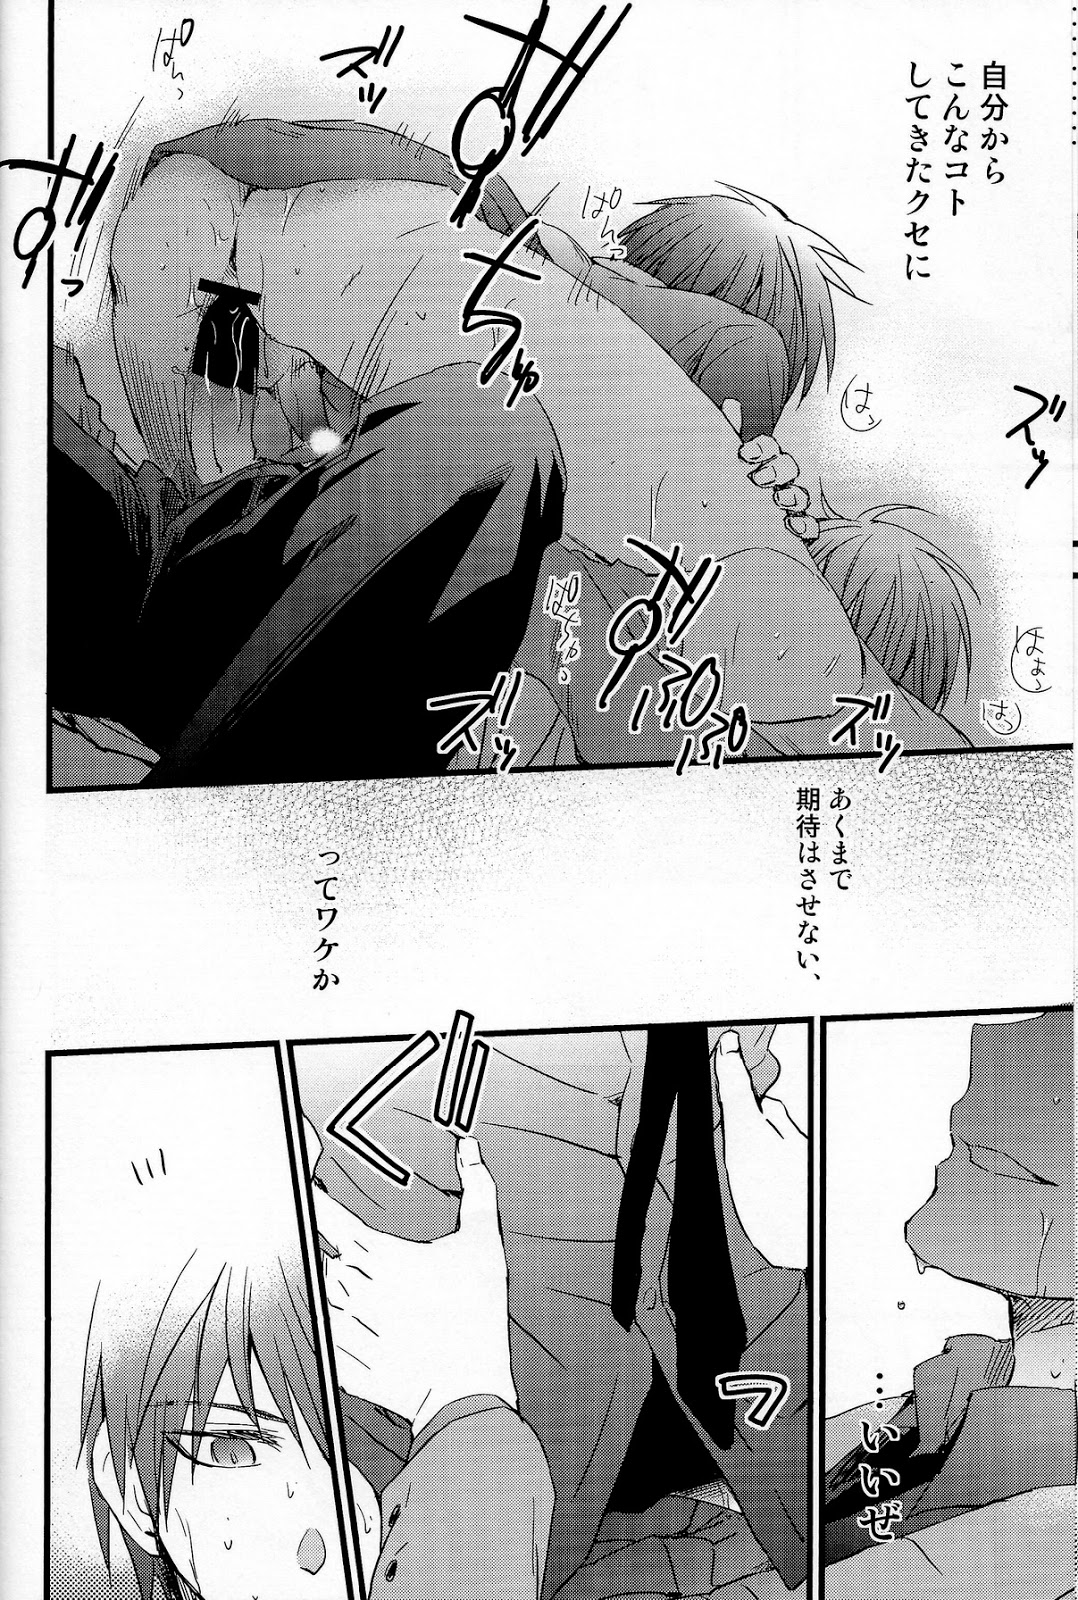 [HP0.01 (Eikichi)] Danshi Koukousei de Saenai Basuke Buin o Shite Iru ga Toshishita no Shushou de Chuunibyou no Otoko ni XXX o Shimetsukerarete Iru. (Kuroko no Basuke) page 9 full